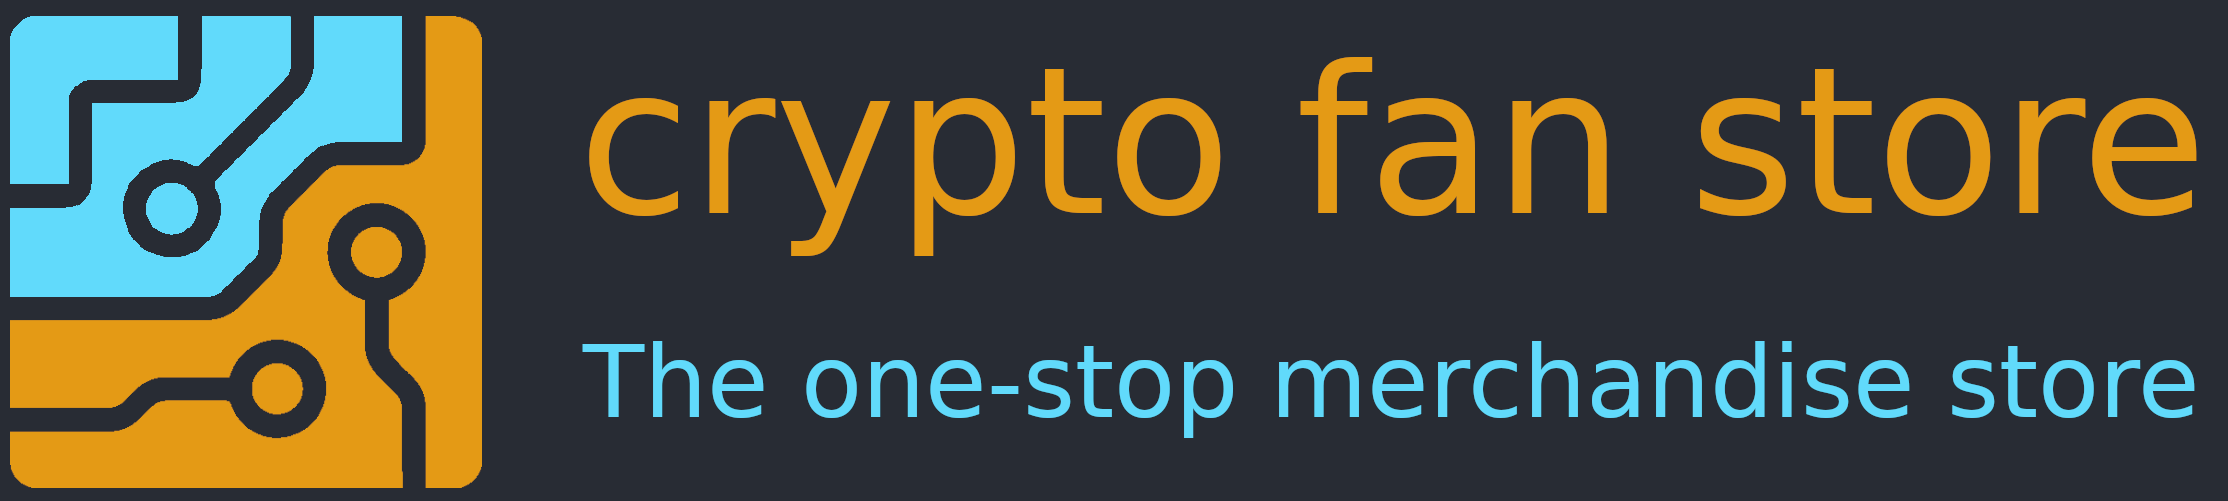 crypto fan store logo